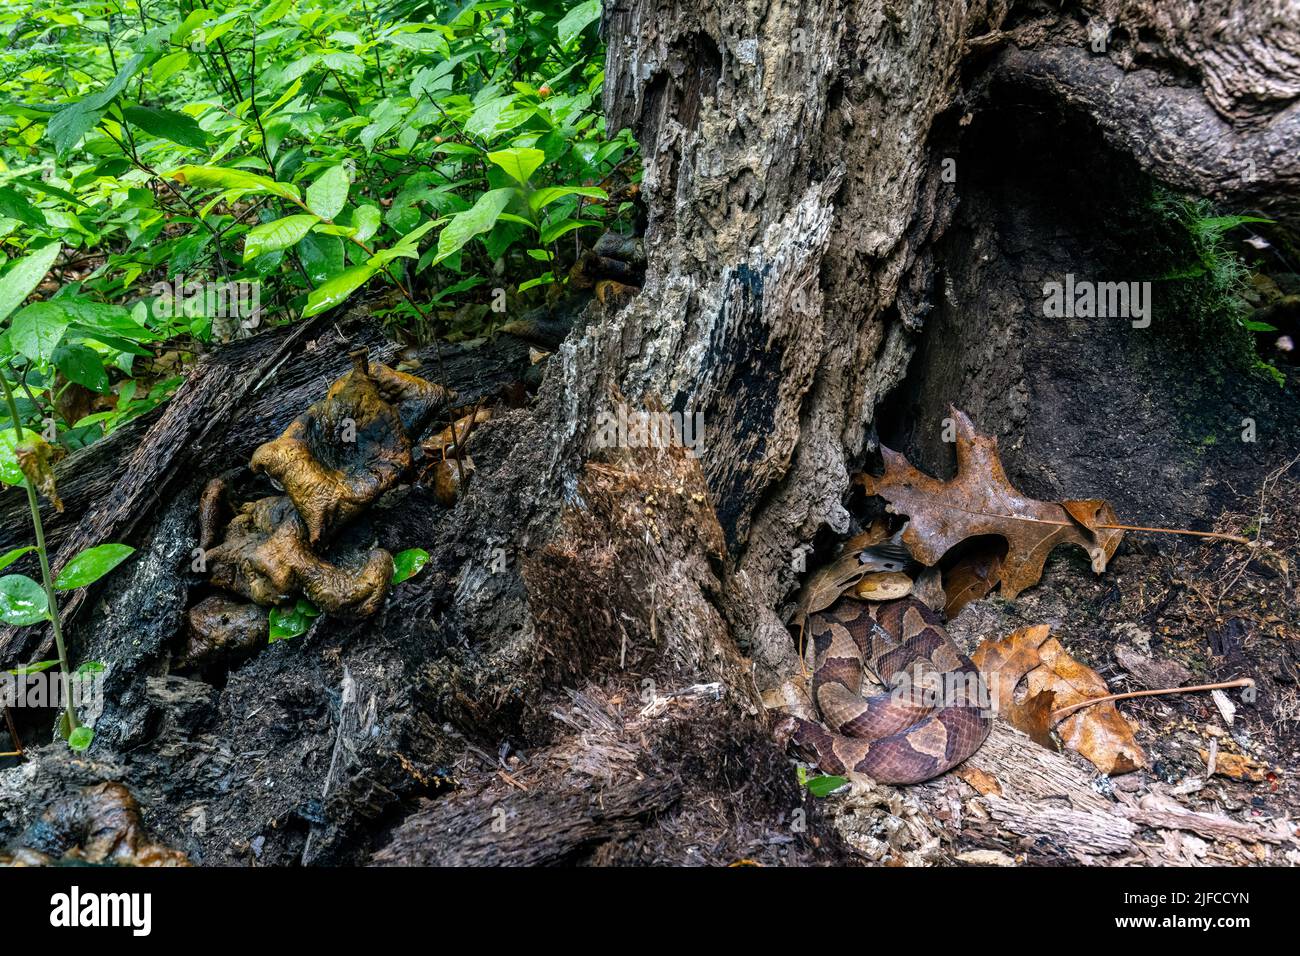 Tête de coperon de l'est (Agkistrodon contortrix) se cachant dans la souche d'arbre - Bracken Preserve, Brevard, Caroline du Nord, États-Unis Banque D'Images